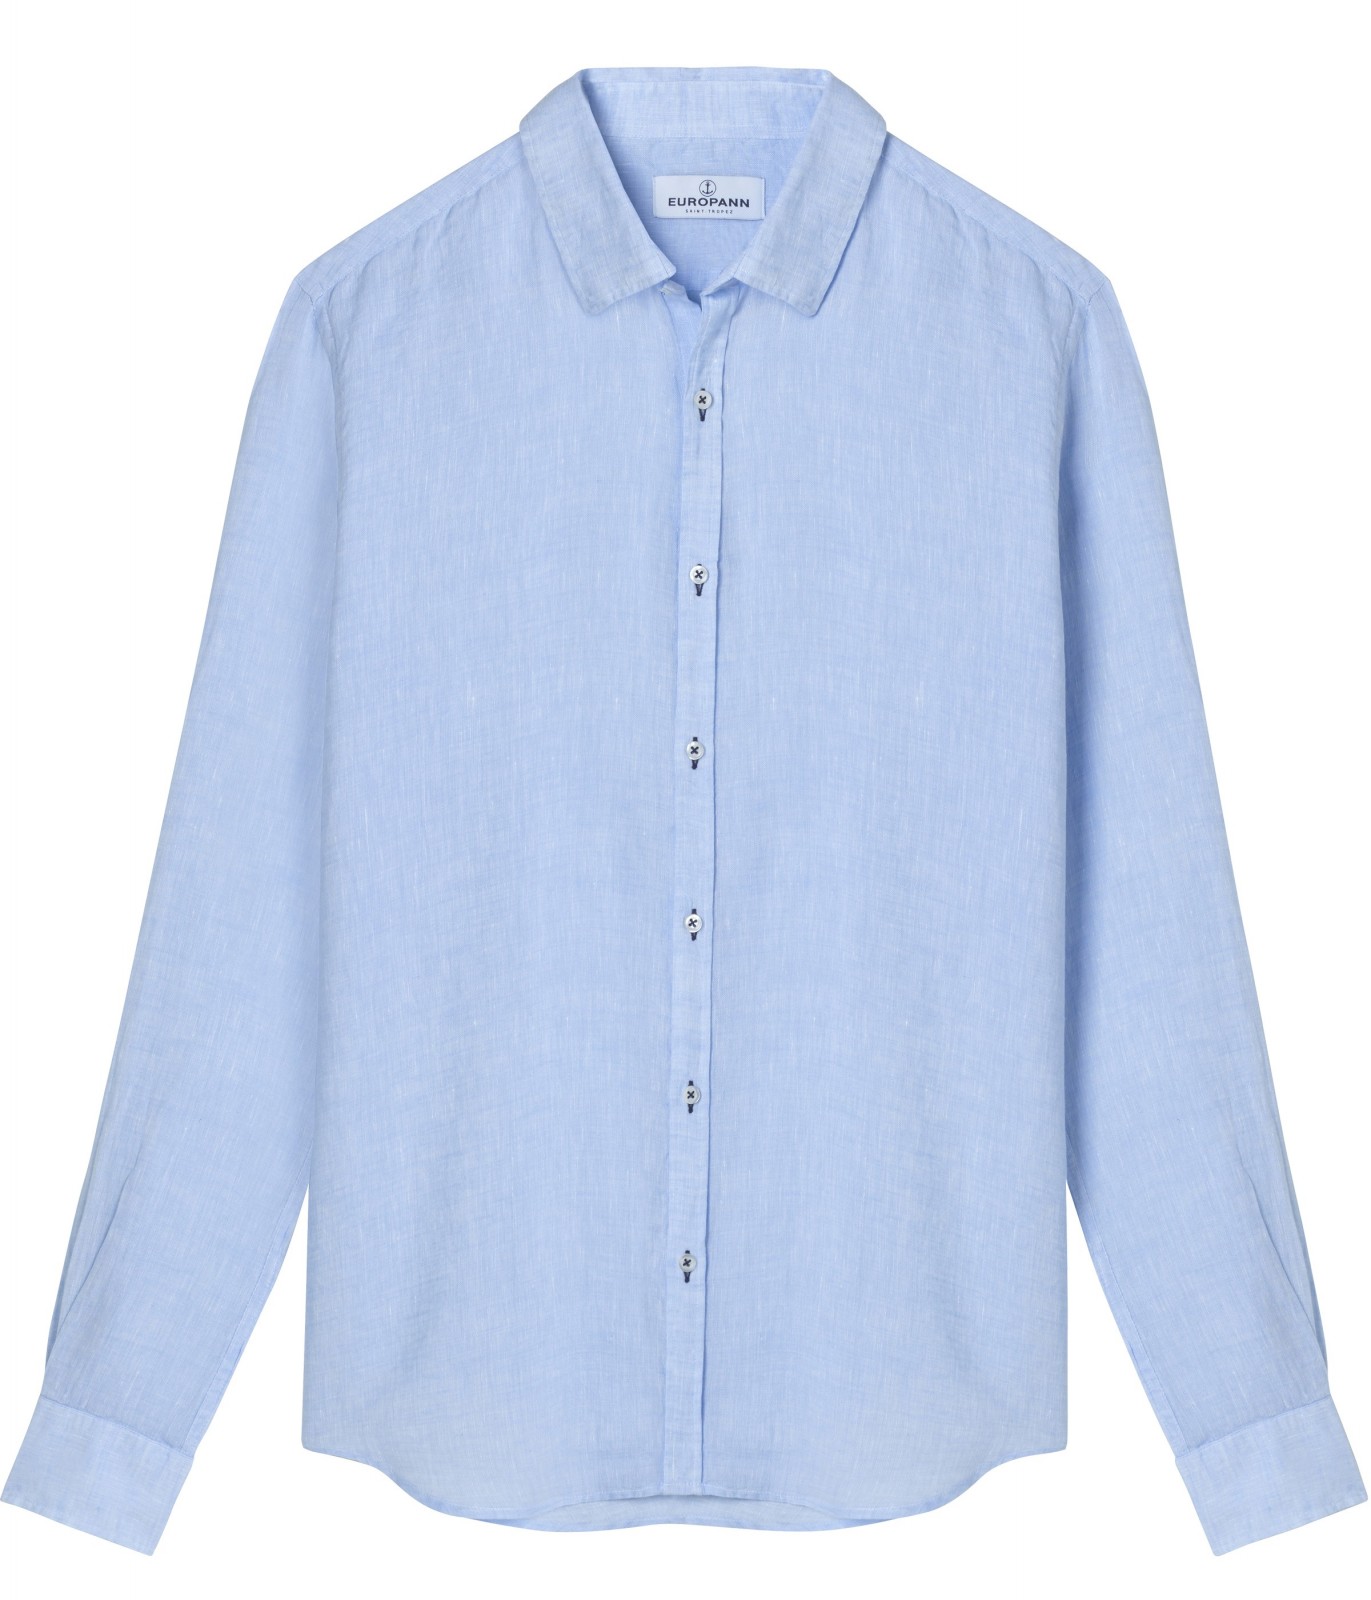 Plain sky blue color long sleeves shirt for men|Quality brand Europann